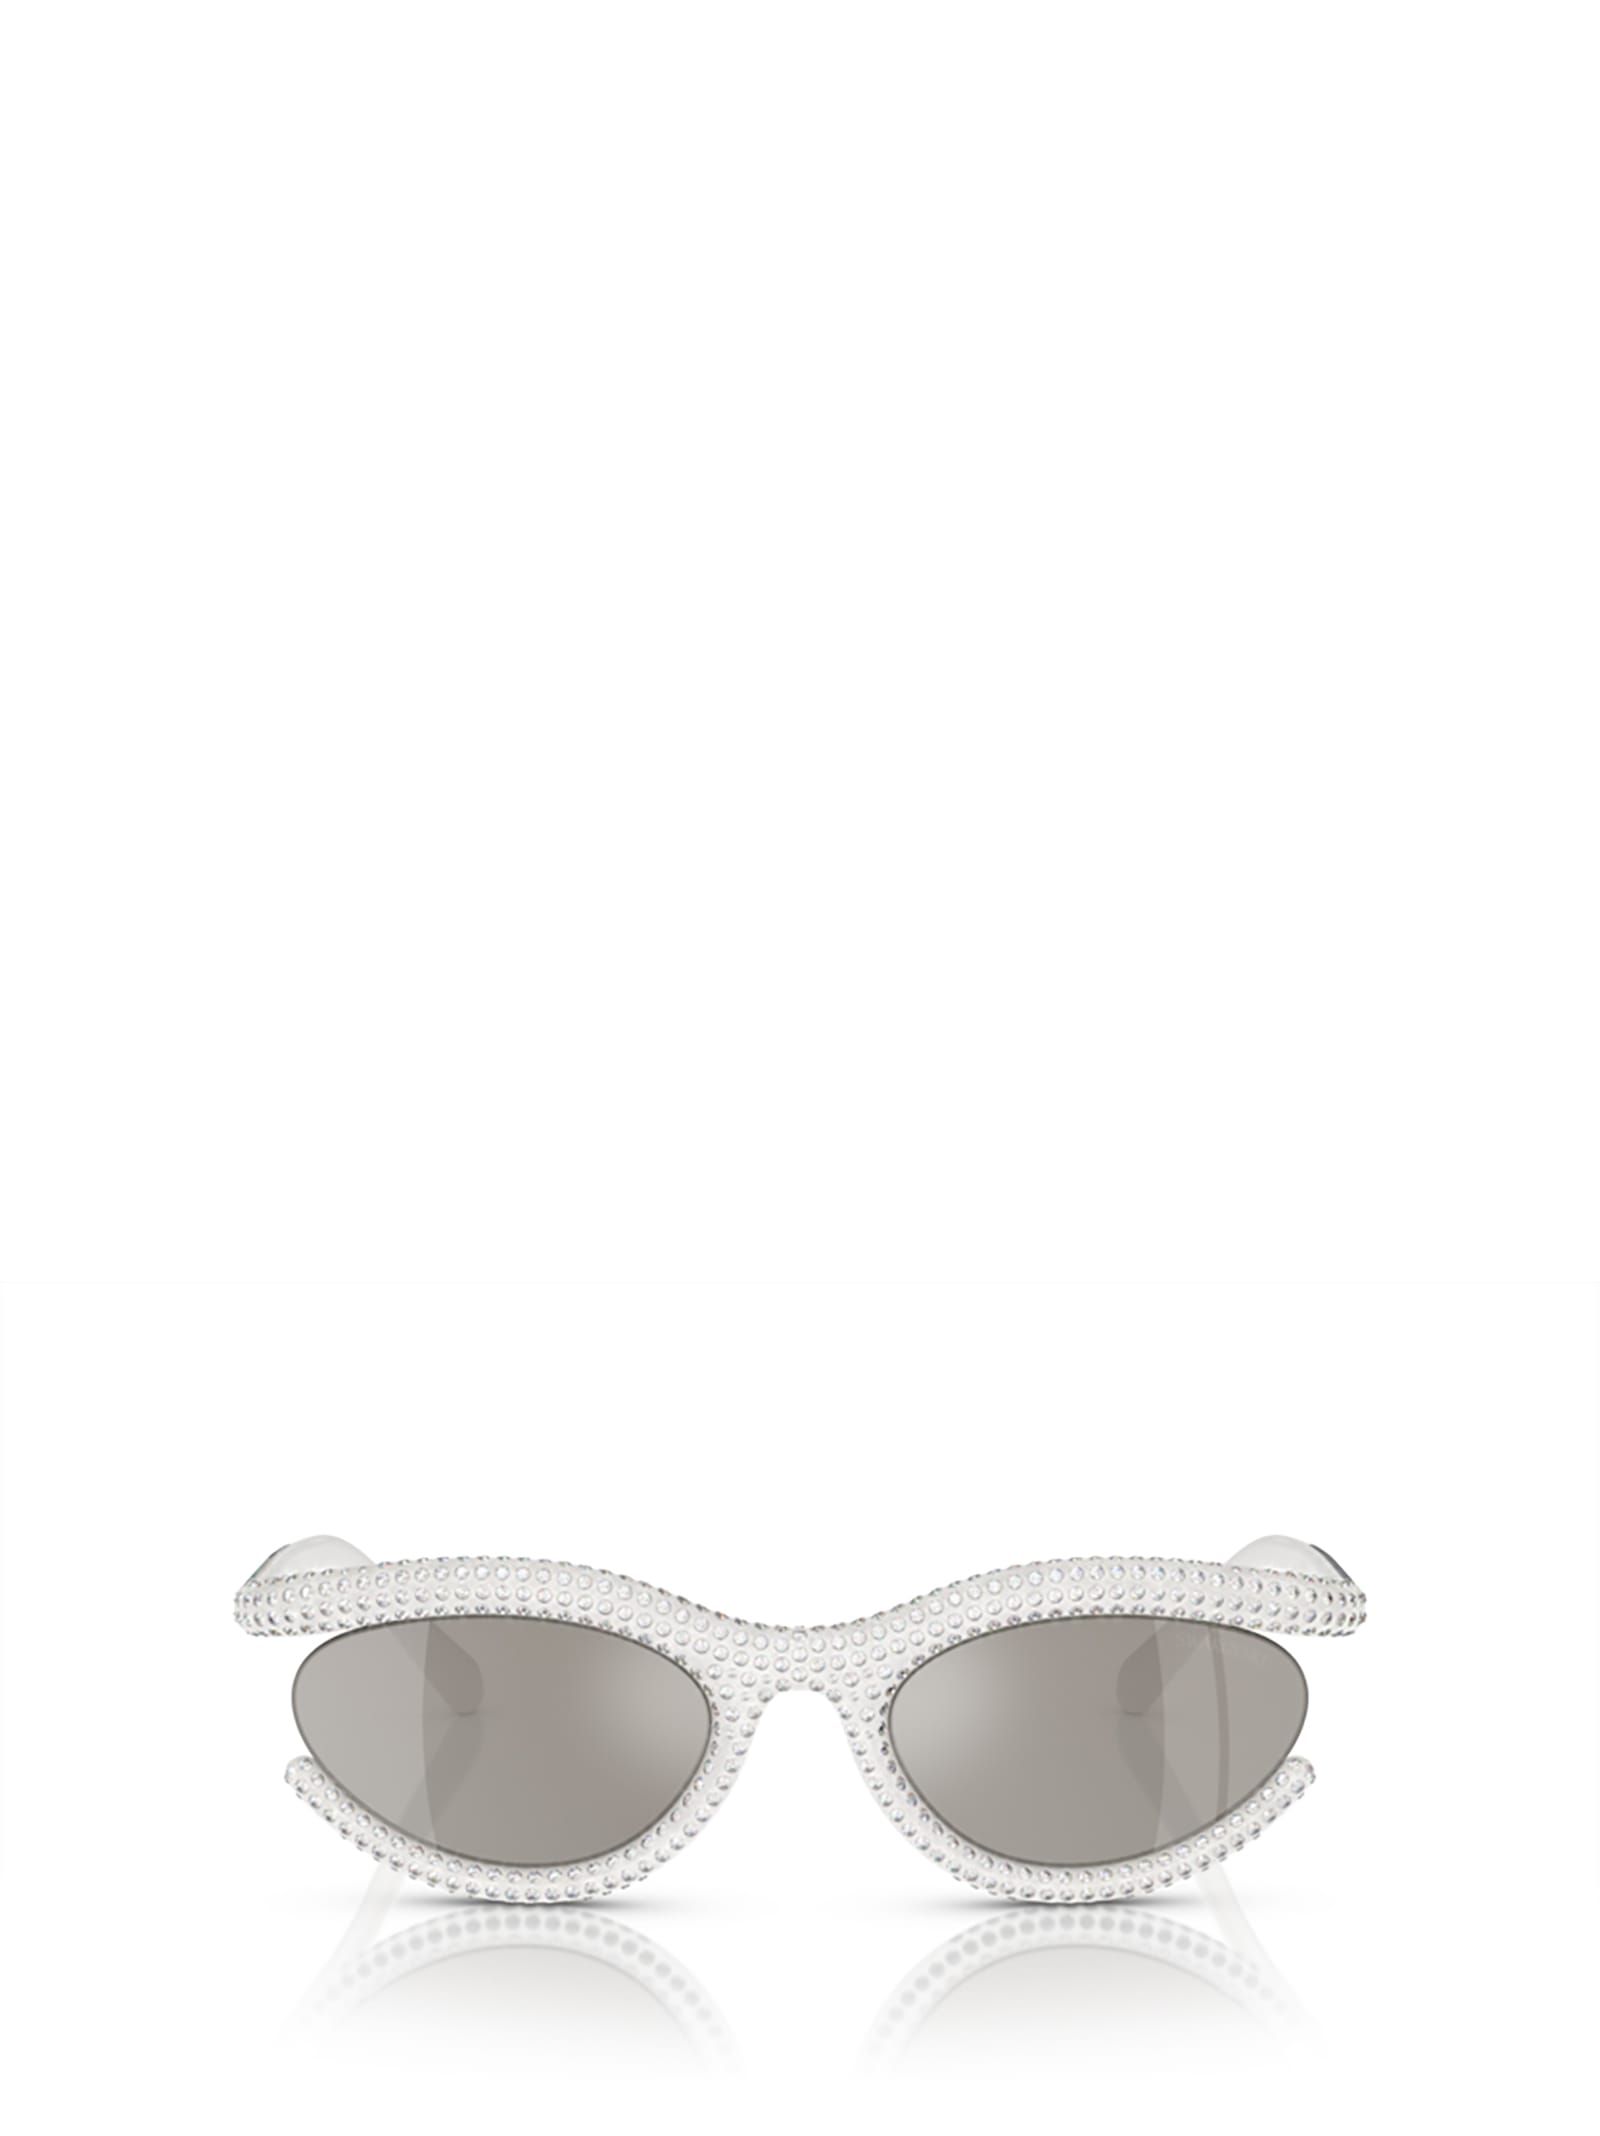 swarovski sk6006 milky white sunglasses